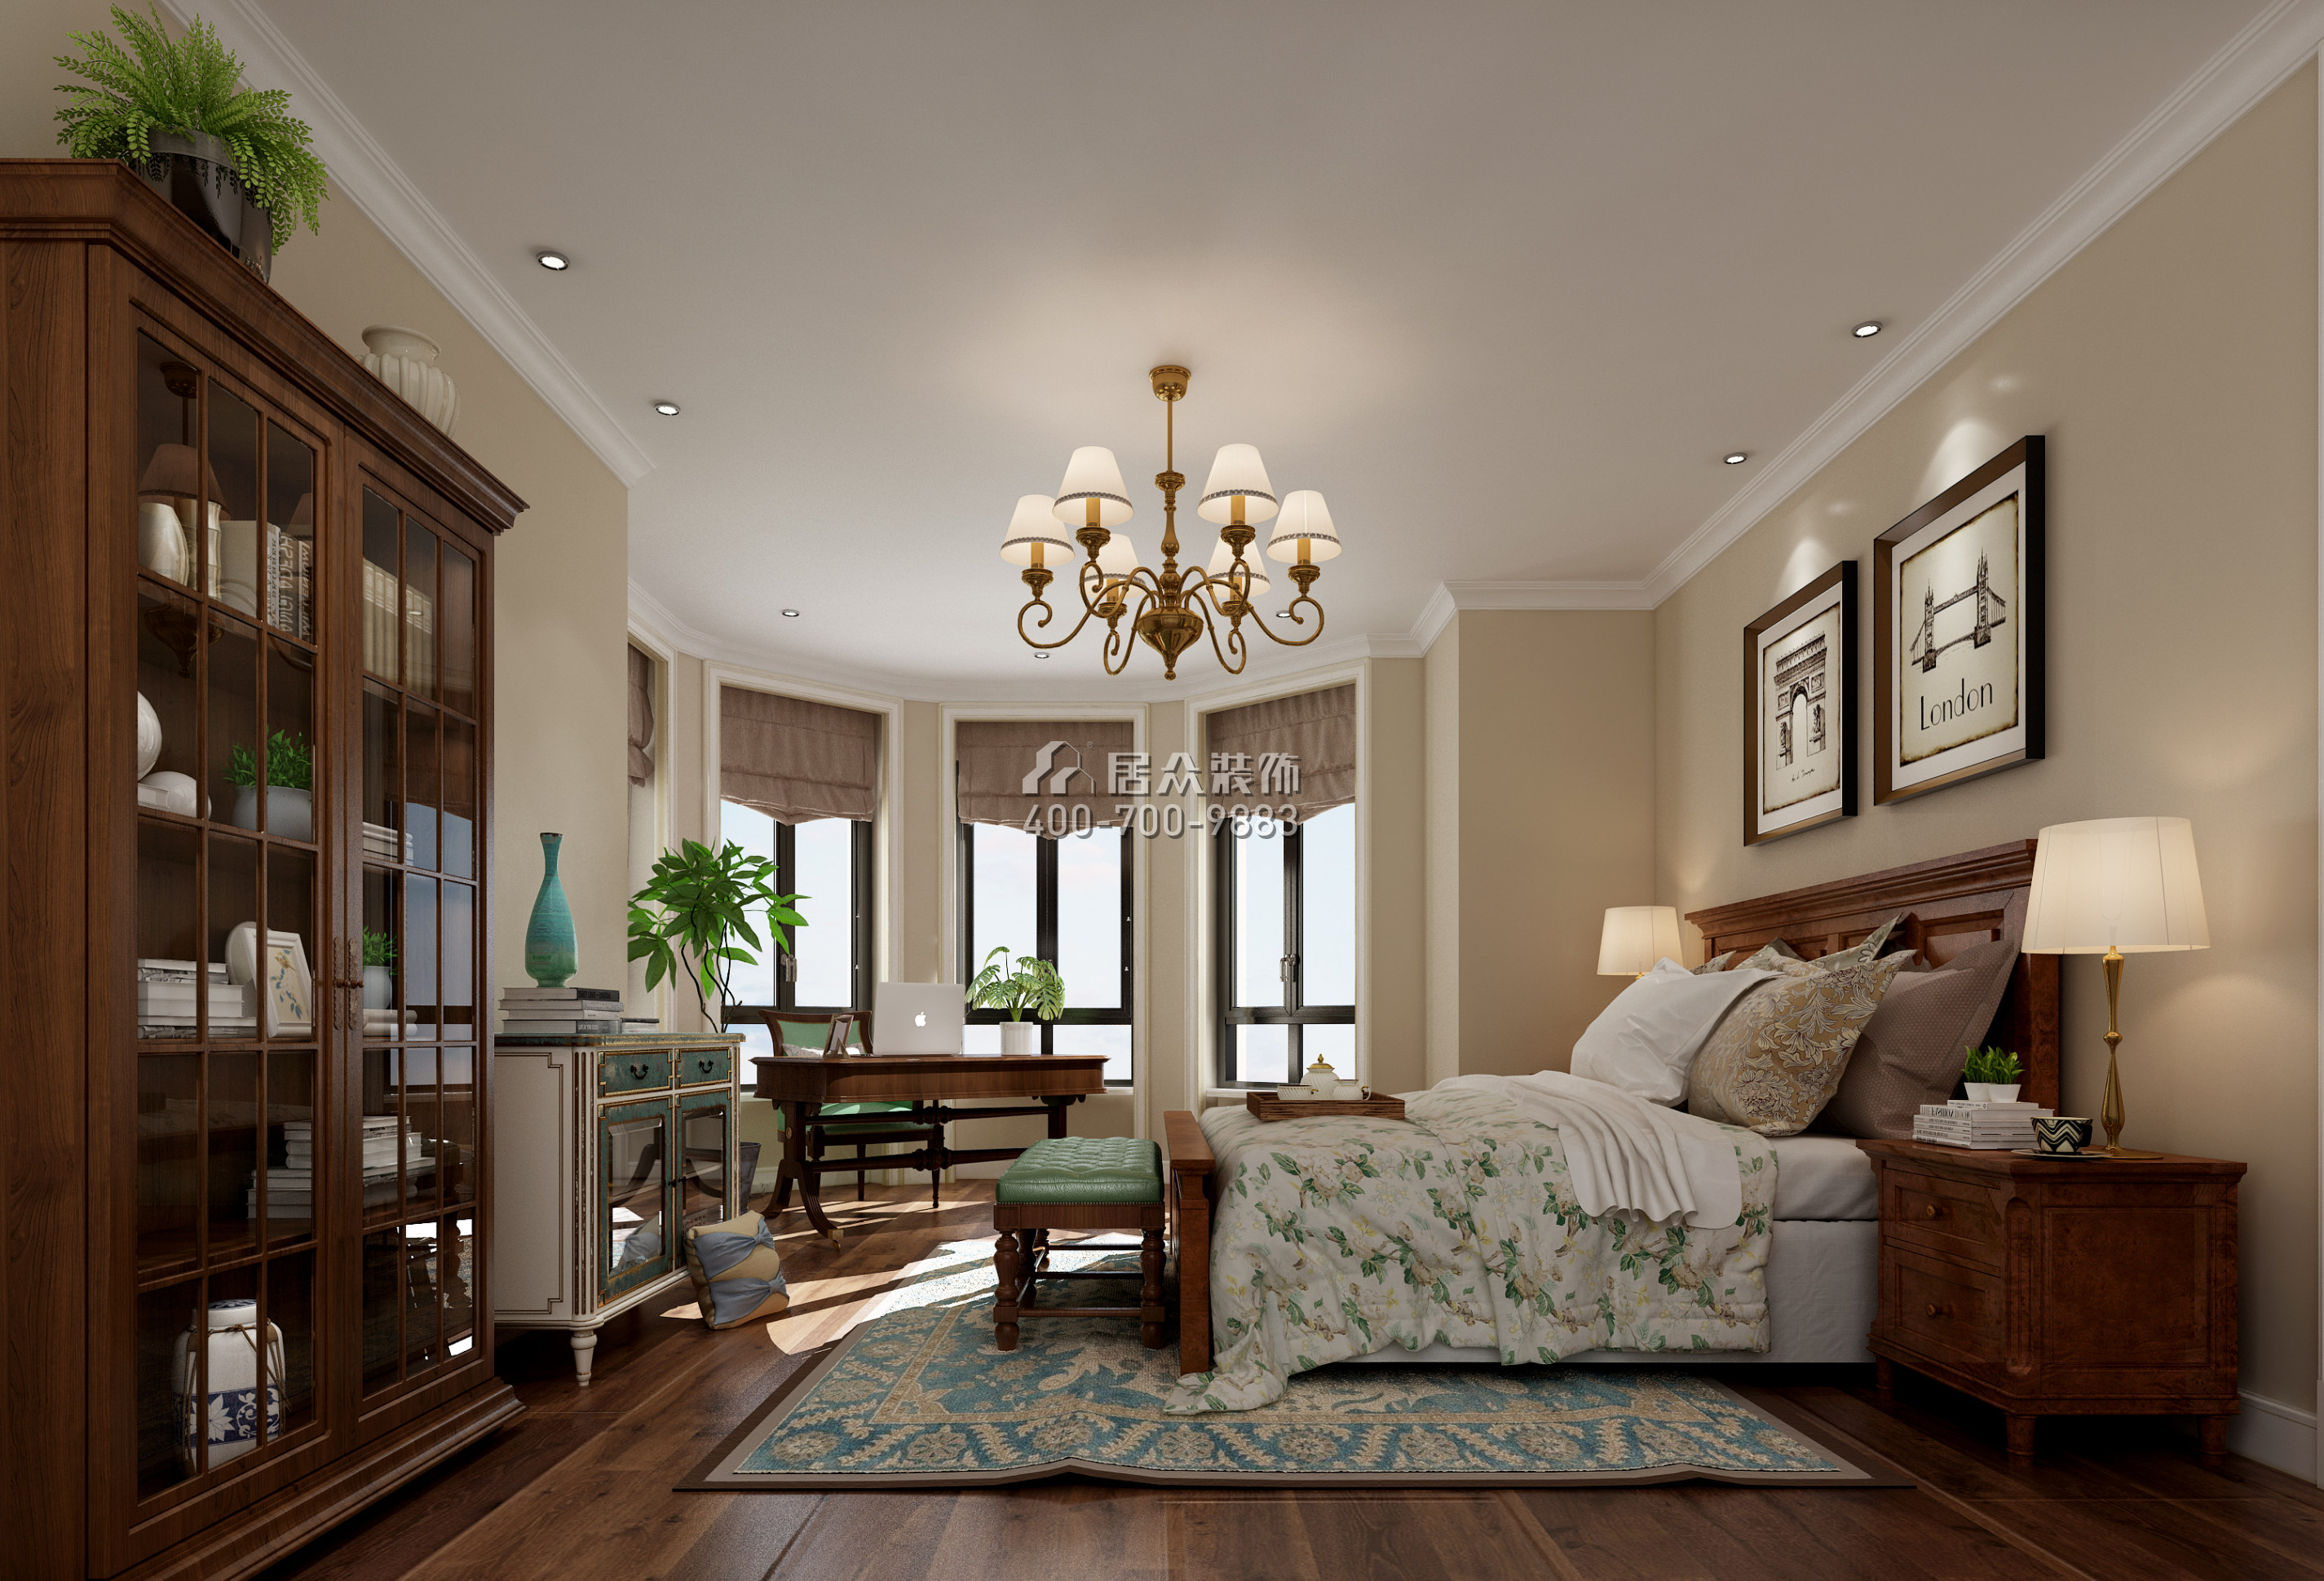 东方大院186平方米美式风格平层户型卧室装修效果图